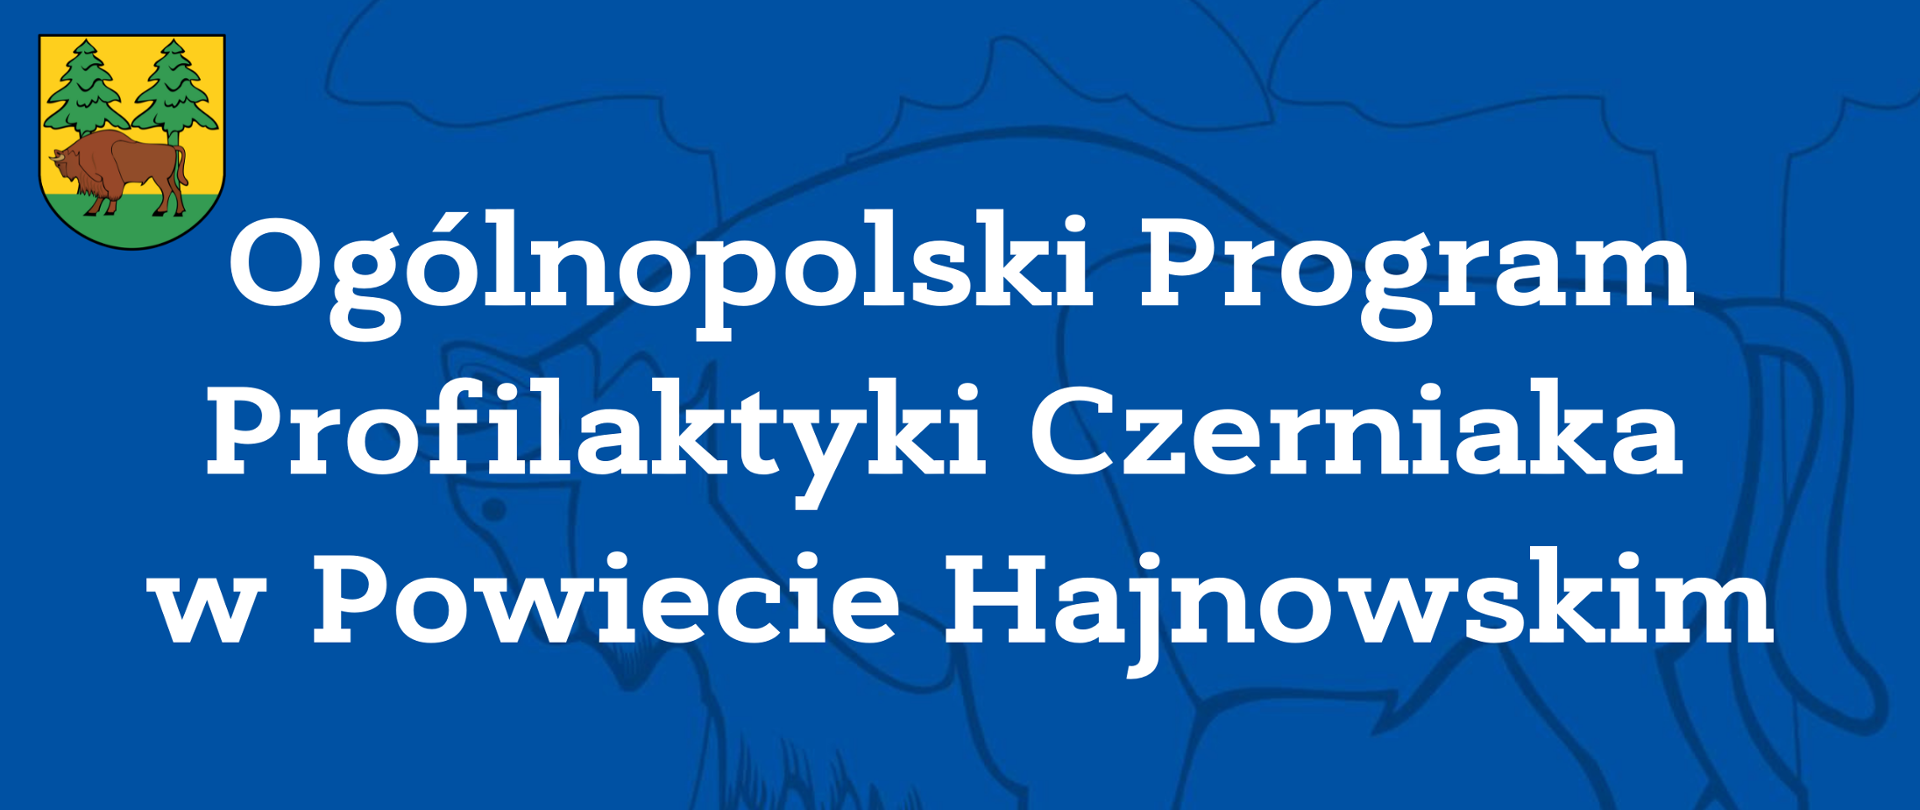 Ogólnopolski Program Profilaktyki Czerniaka w Powiecie Hajnowskim